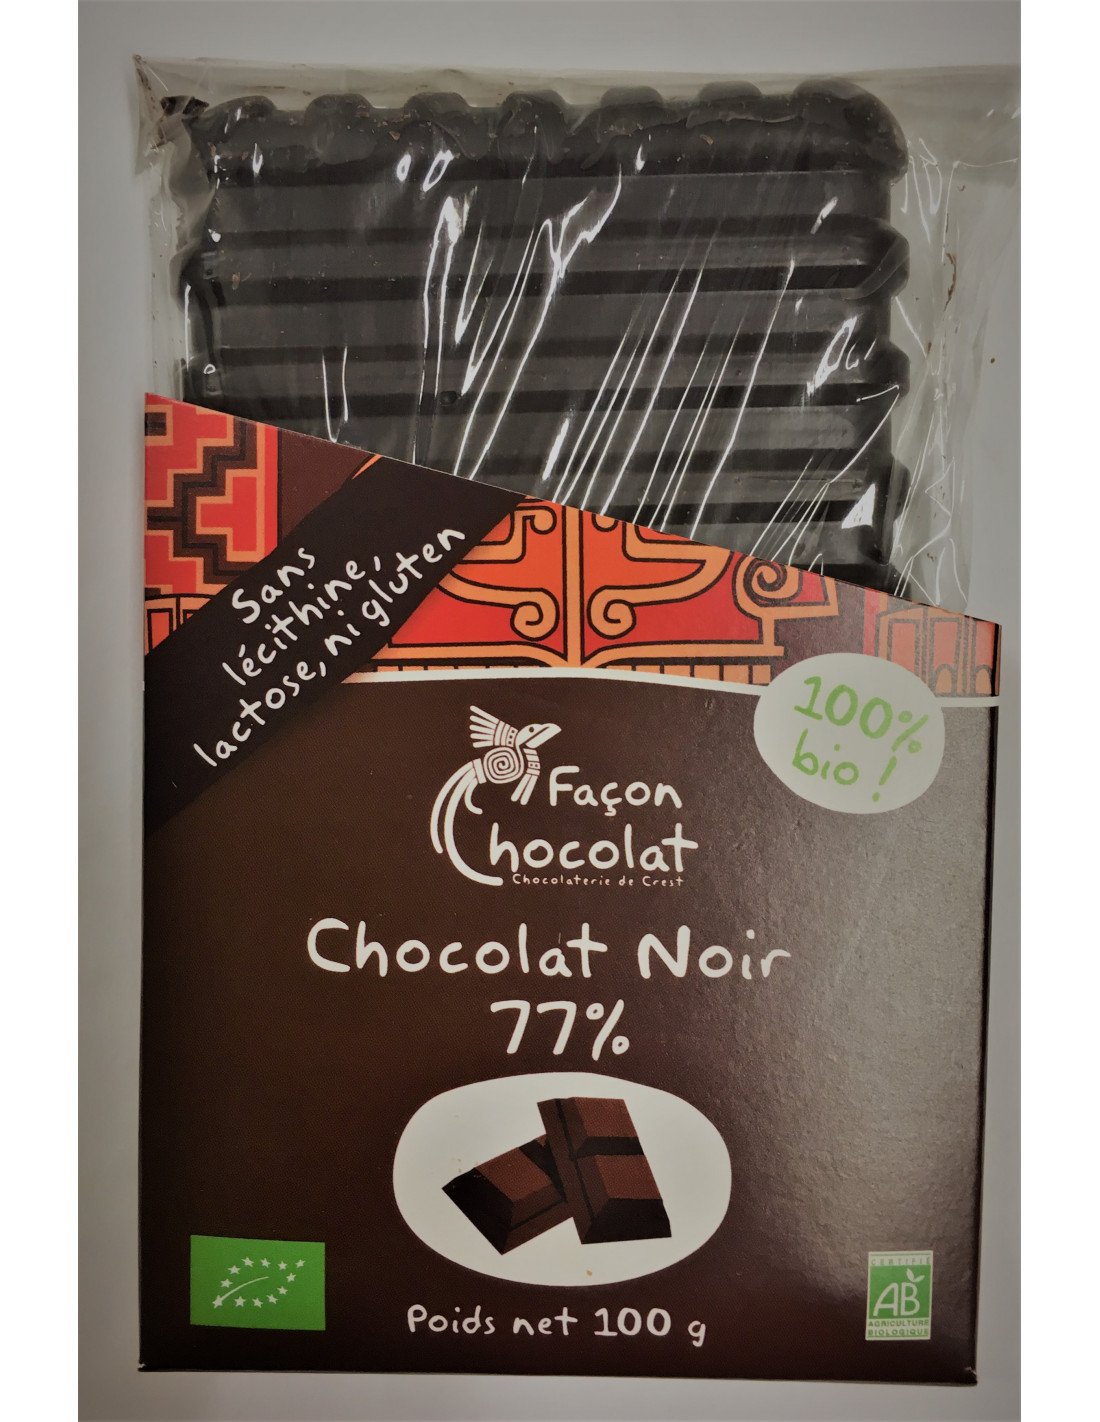 Tablette de chocolat publicitaire noir 71% bio 90 g - Cadoétik